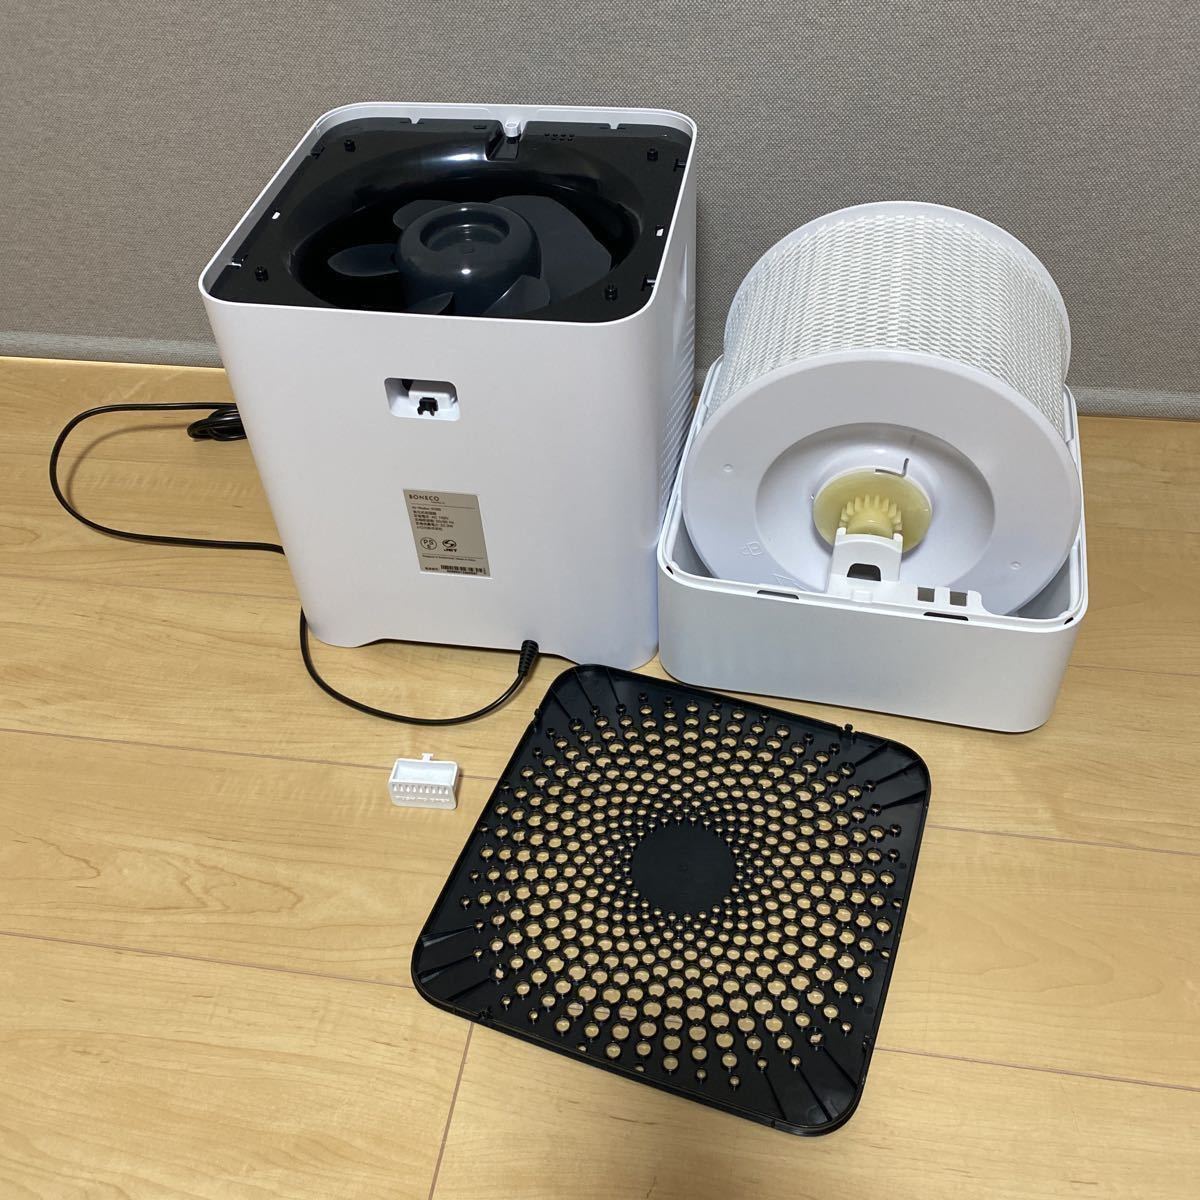 展示保証付き☆BONECO HEALTHY AIR 気化式加湿器 W200 [大容量4.5L/10